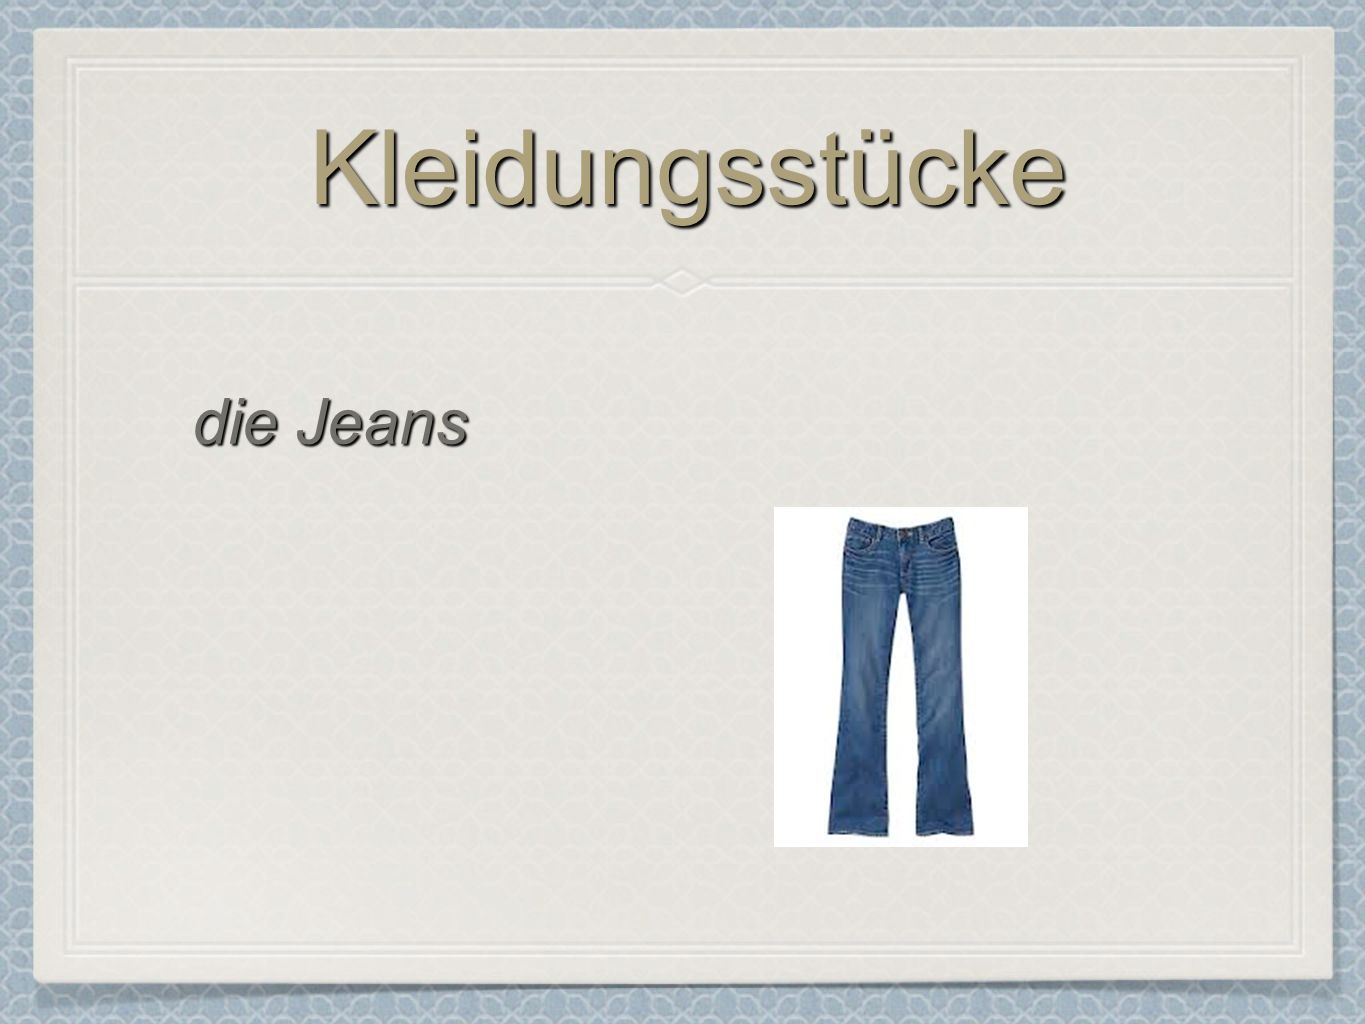 Kleidungsstücke die Jeans